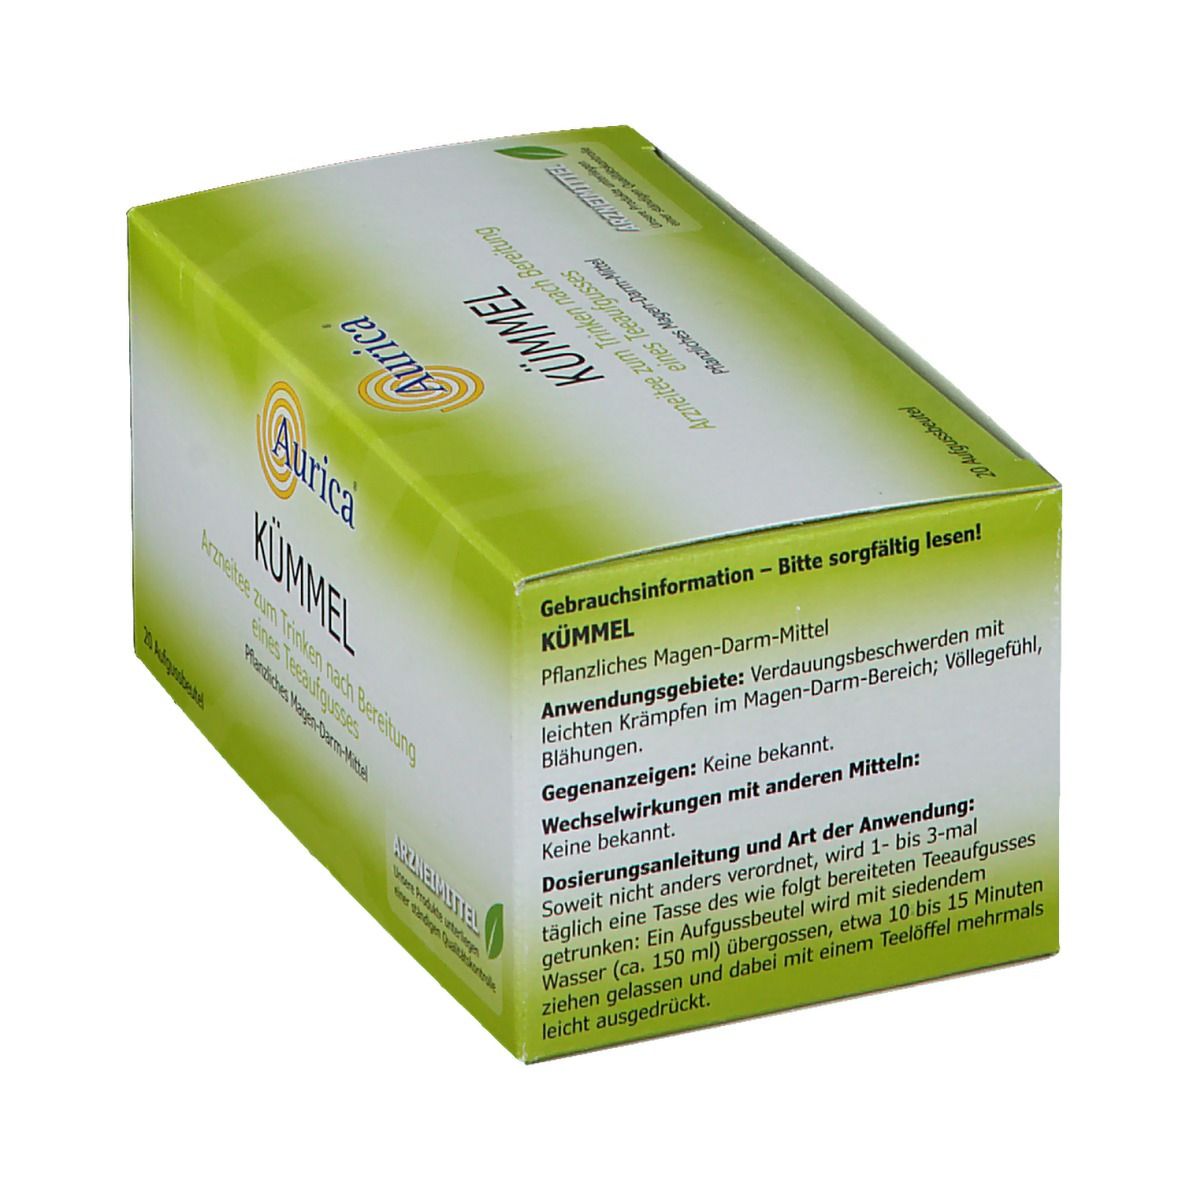 Aurica® Kümmel Tee Filterbeutel